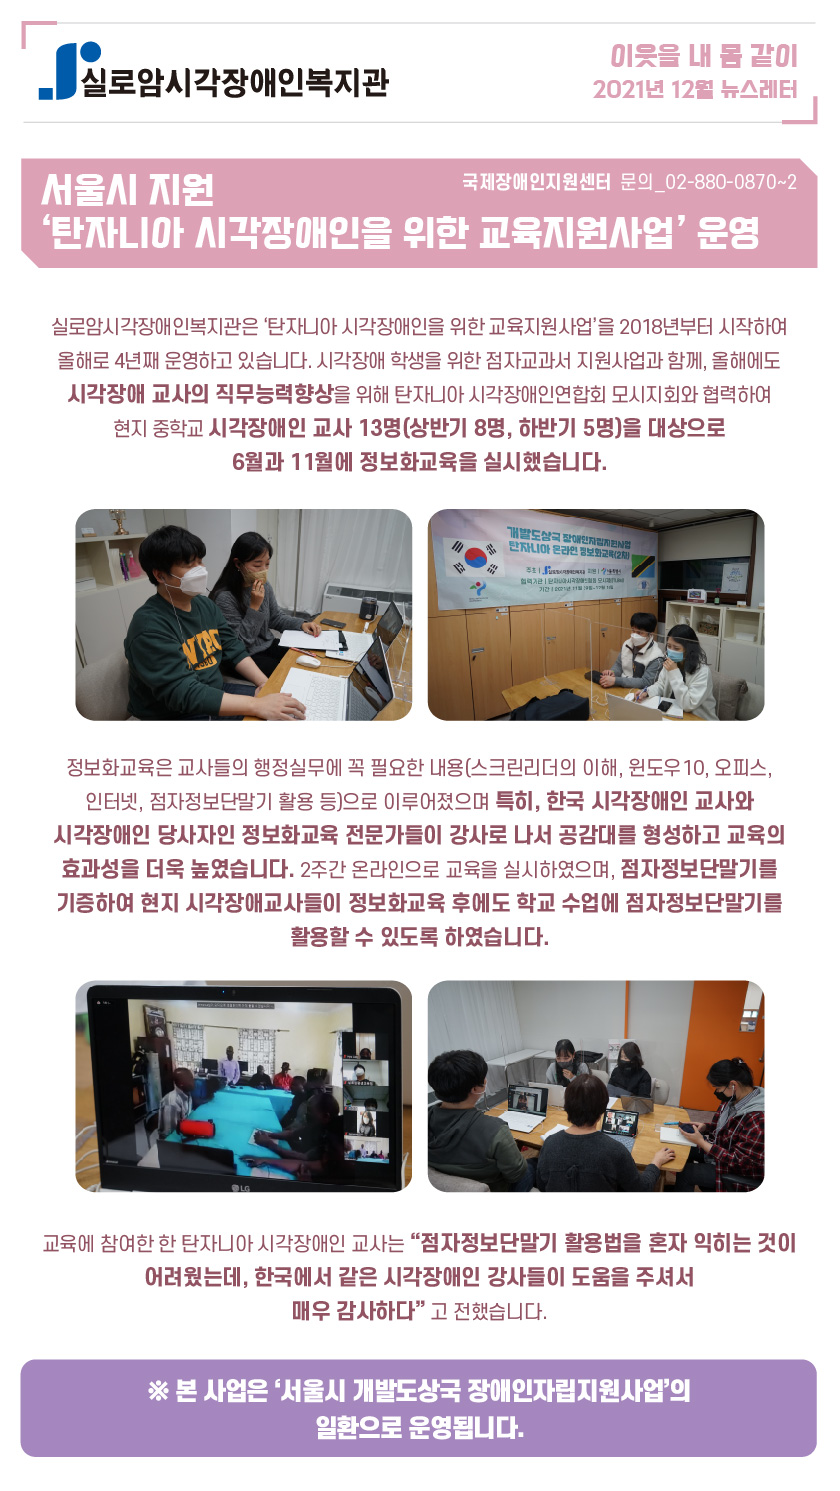 서울시 지원 ‘탄자니아 시각장애인을 위한 교육지원사업’ 운영 썸네일